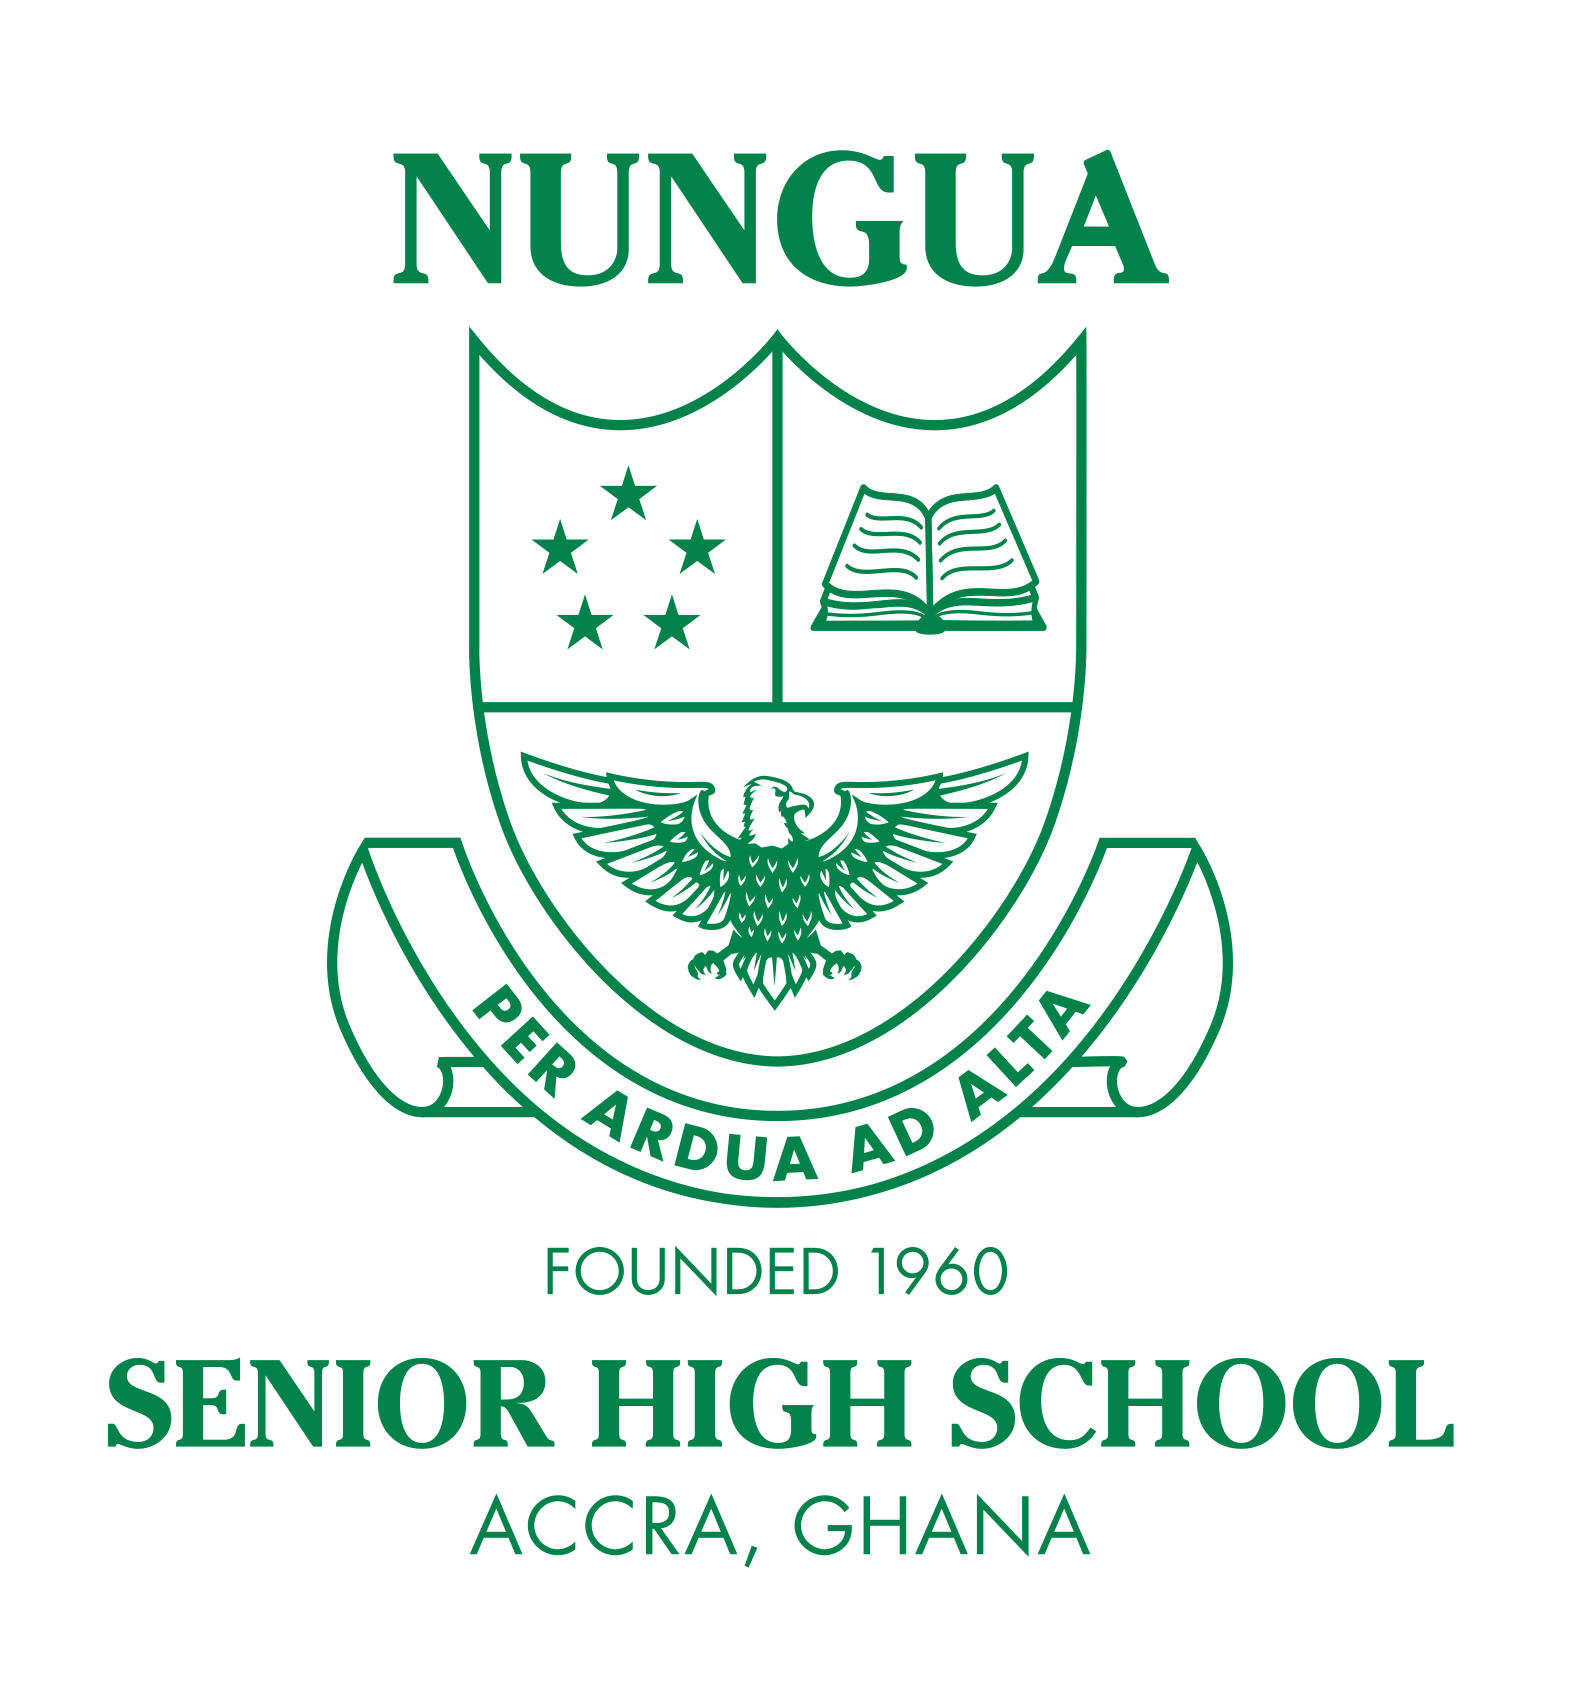 Nungua Senior High School